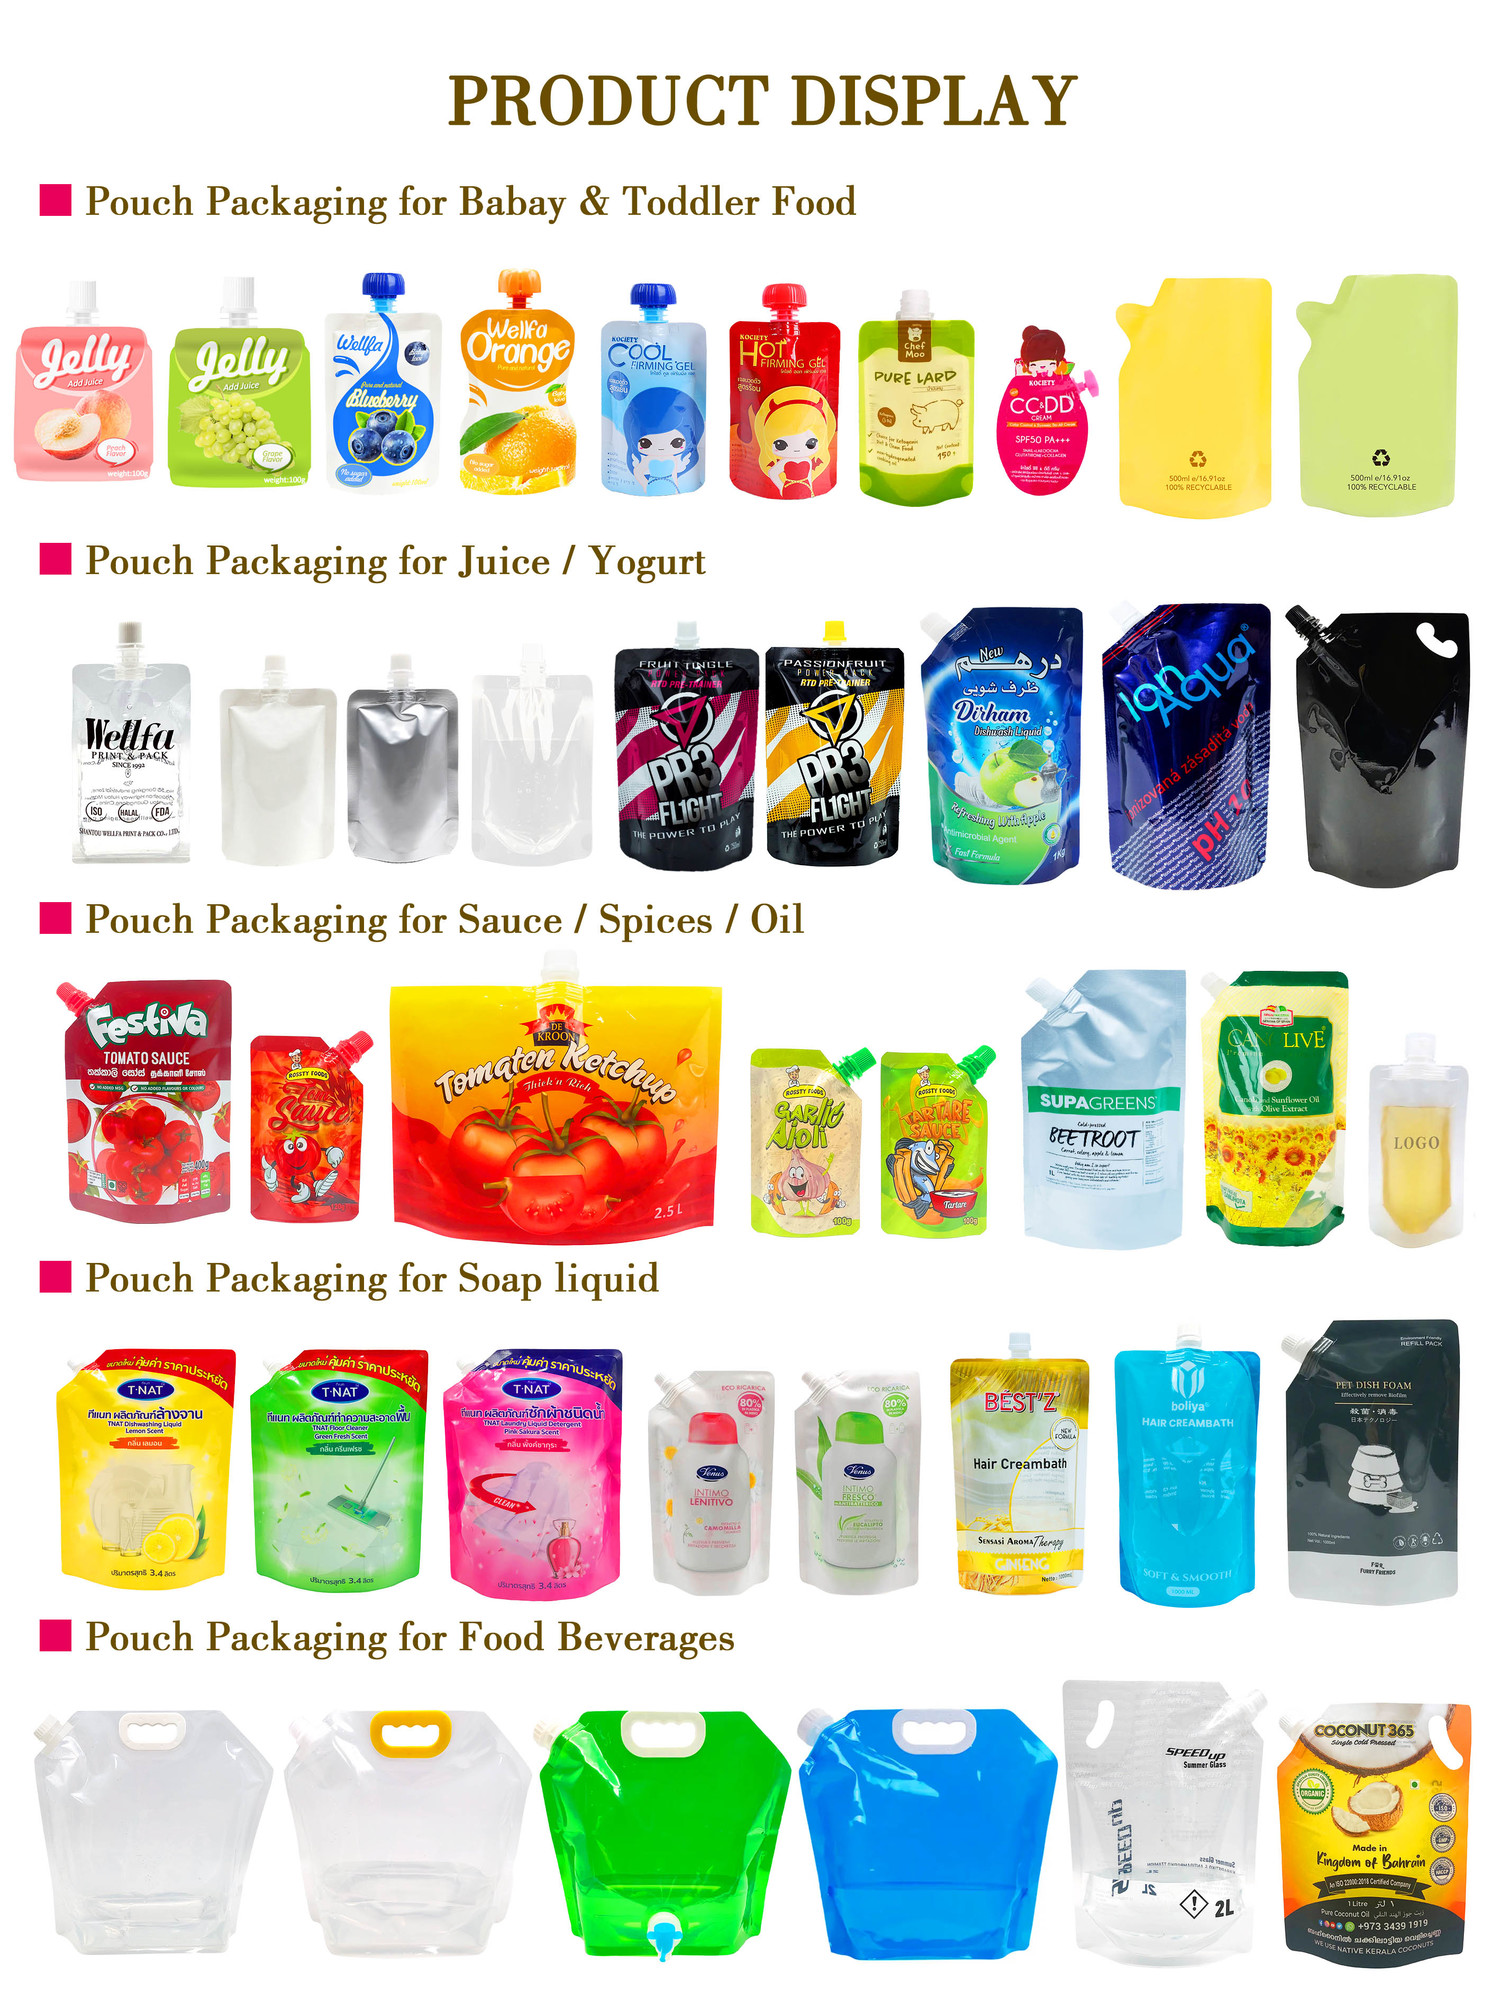 吸嘴袋产品展示1 baby food pouches reusable